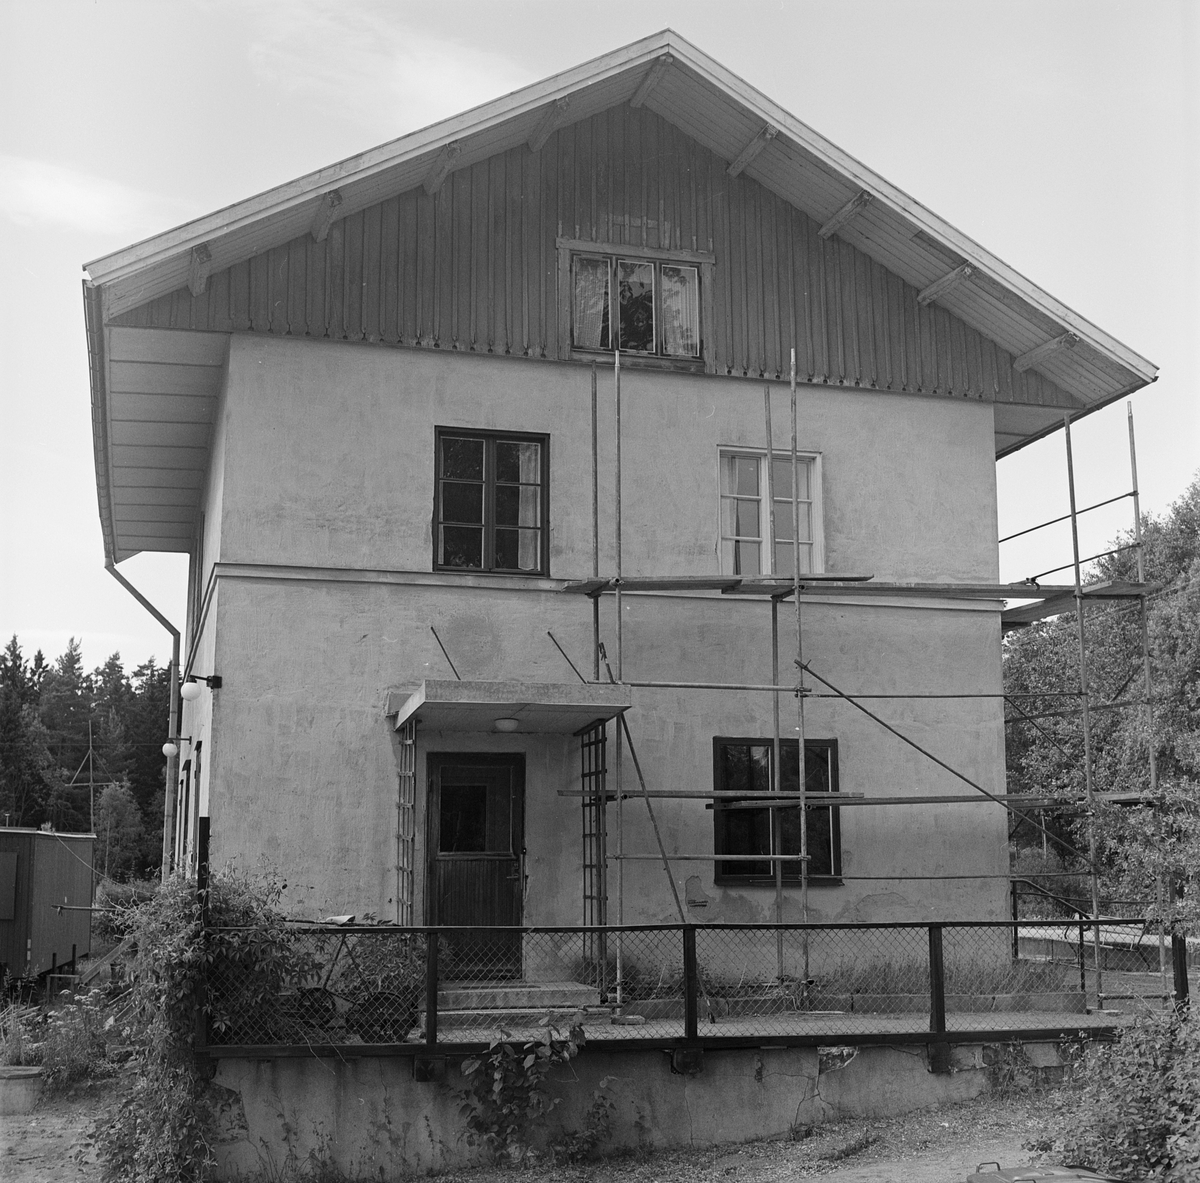 Marielunds stationshus, Marielund 3:20, Uppland 1989